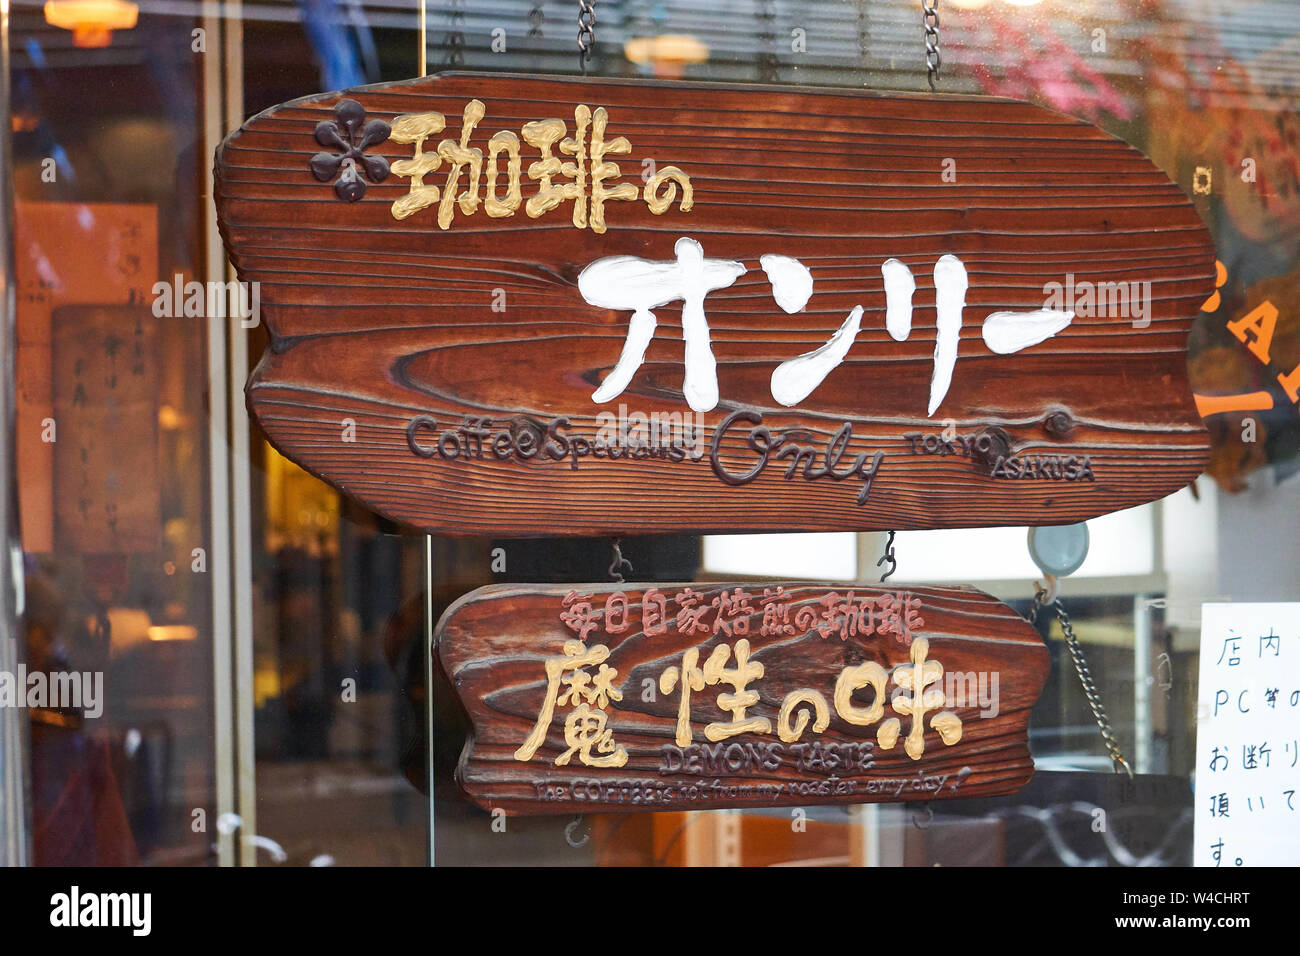 Un cartello in legno si appende davanti alla caffetteria Coffee Specialist Solo a Kappabashi, Asakusa, Tokyo, Giappone, con il suo nome e slogan in giapponese. Foto Stock